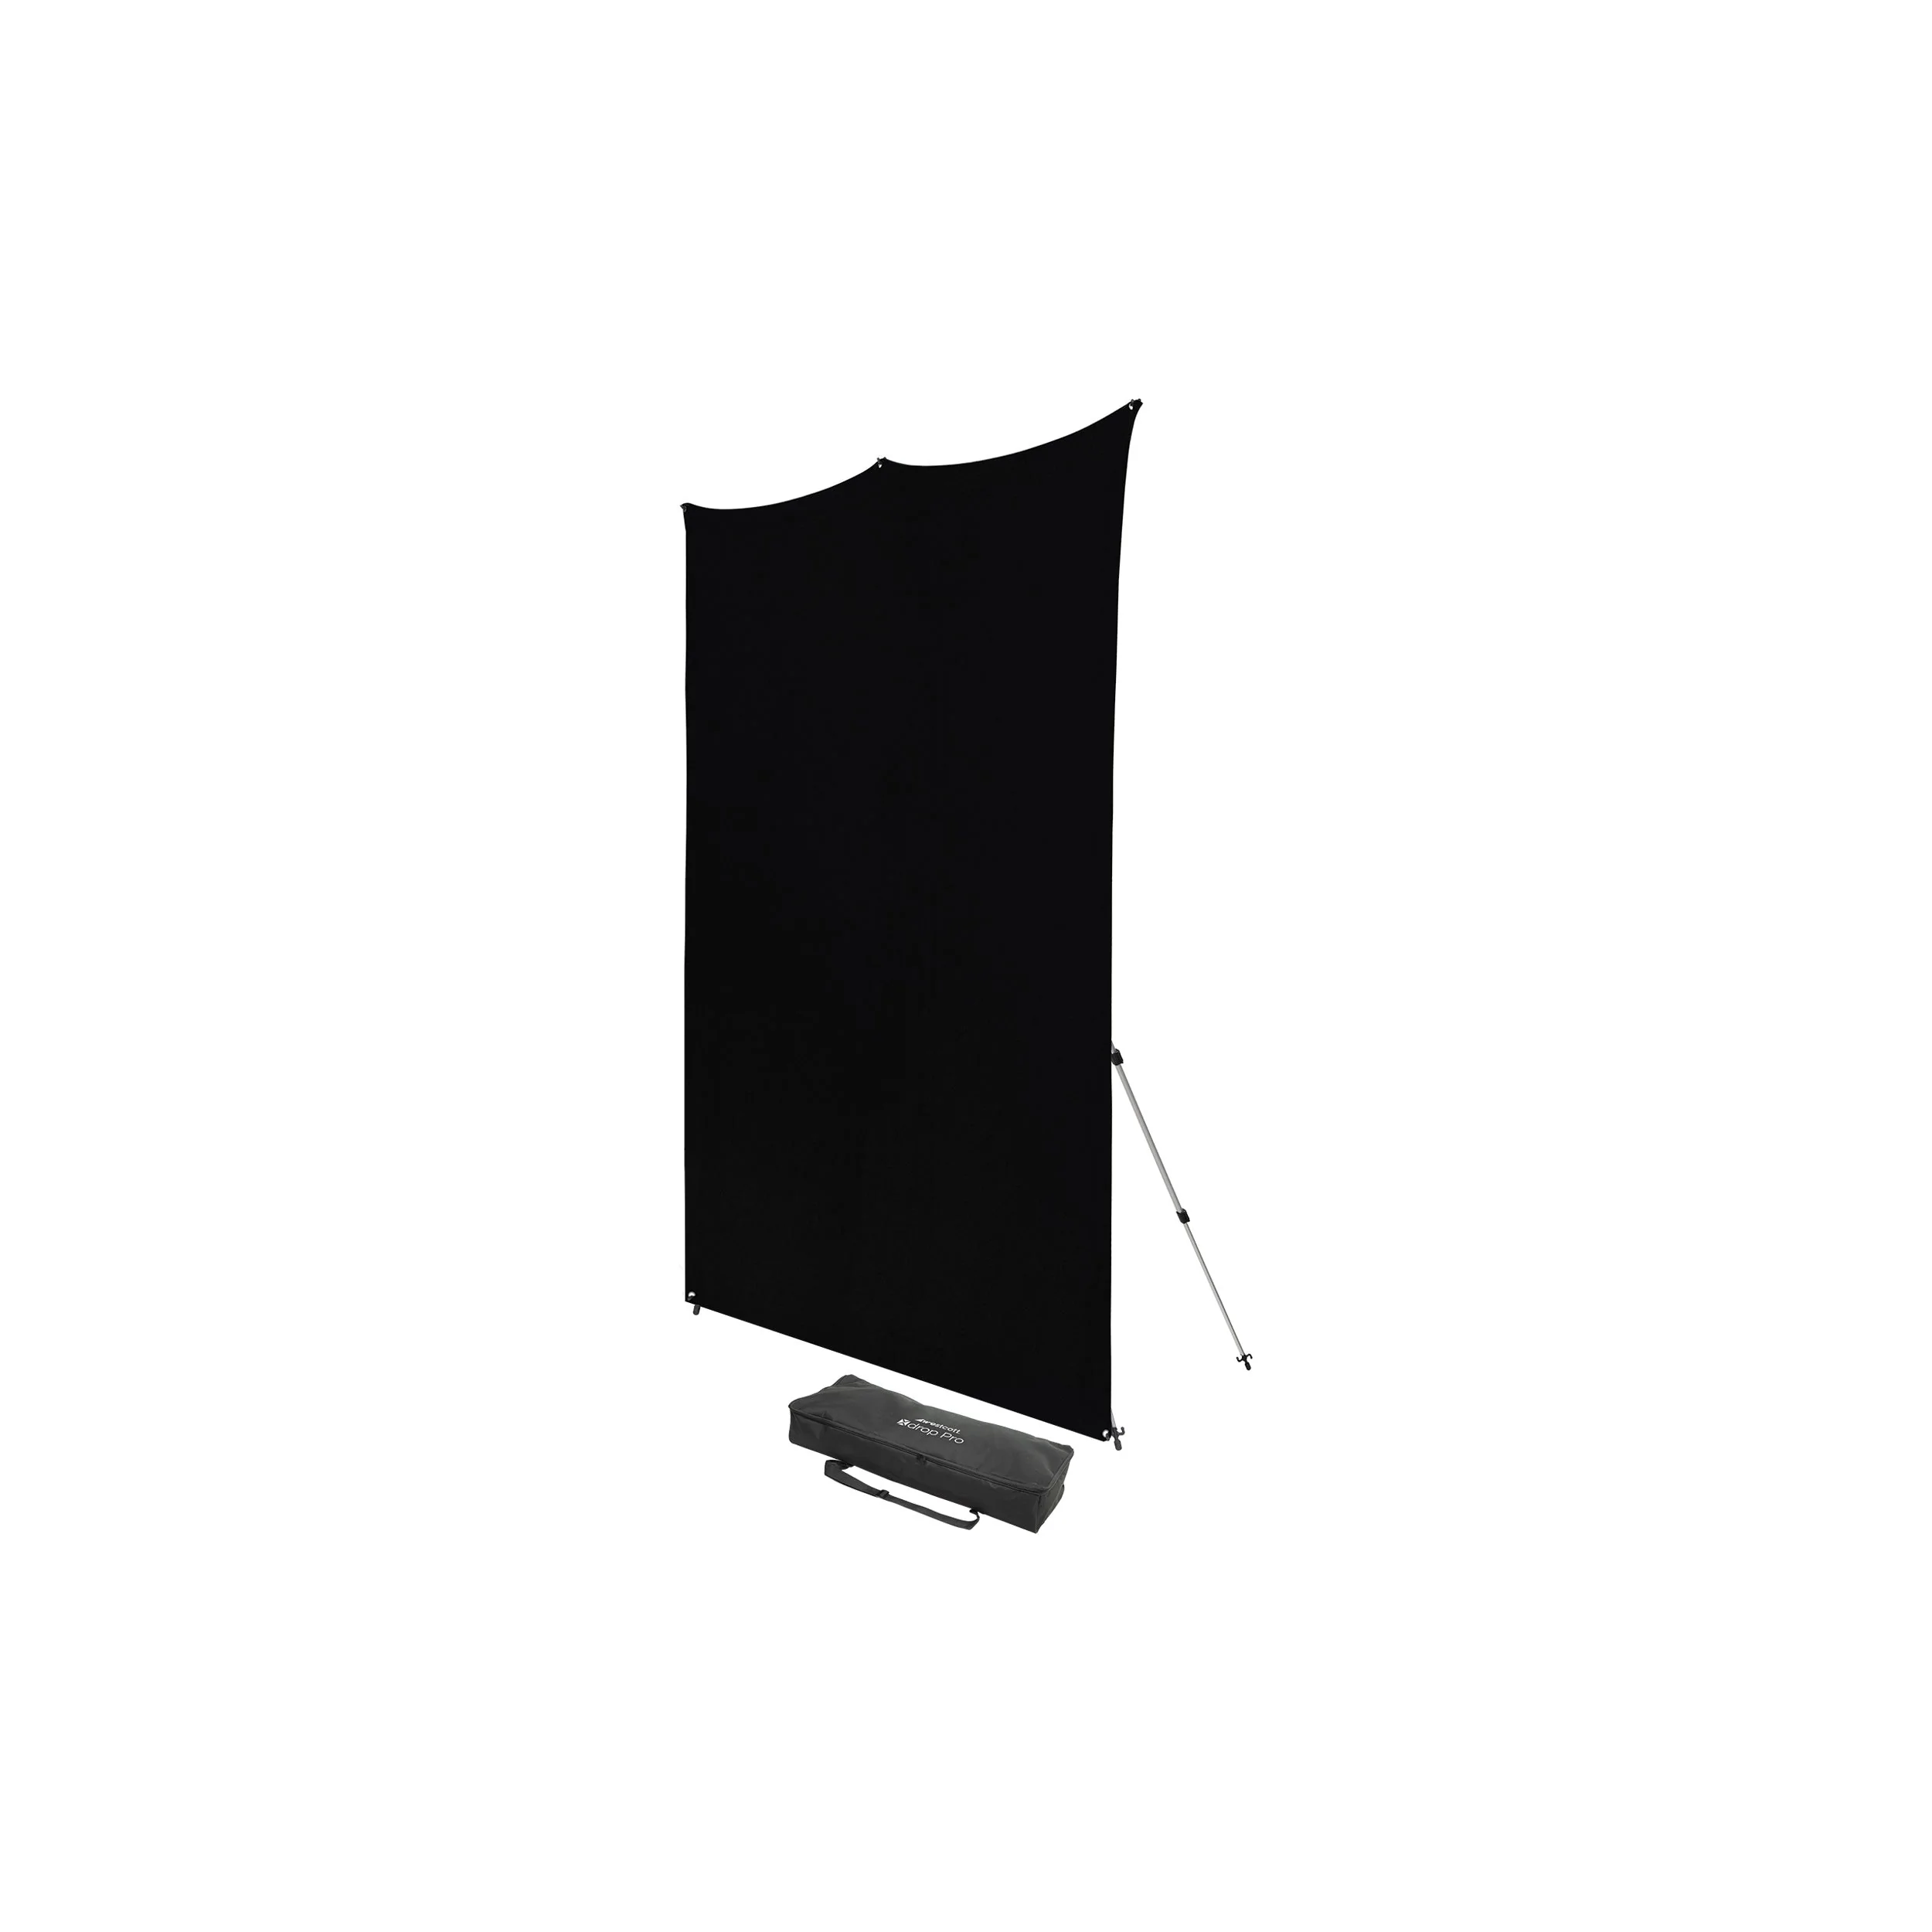 Westcott X-Drop pro-Wrinkle-Resistant Backdrop Kit - Rich Black (8 'x 8')